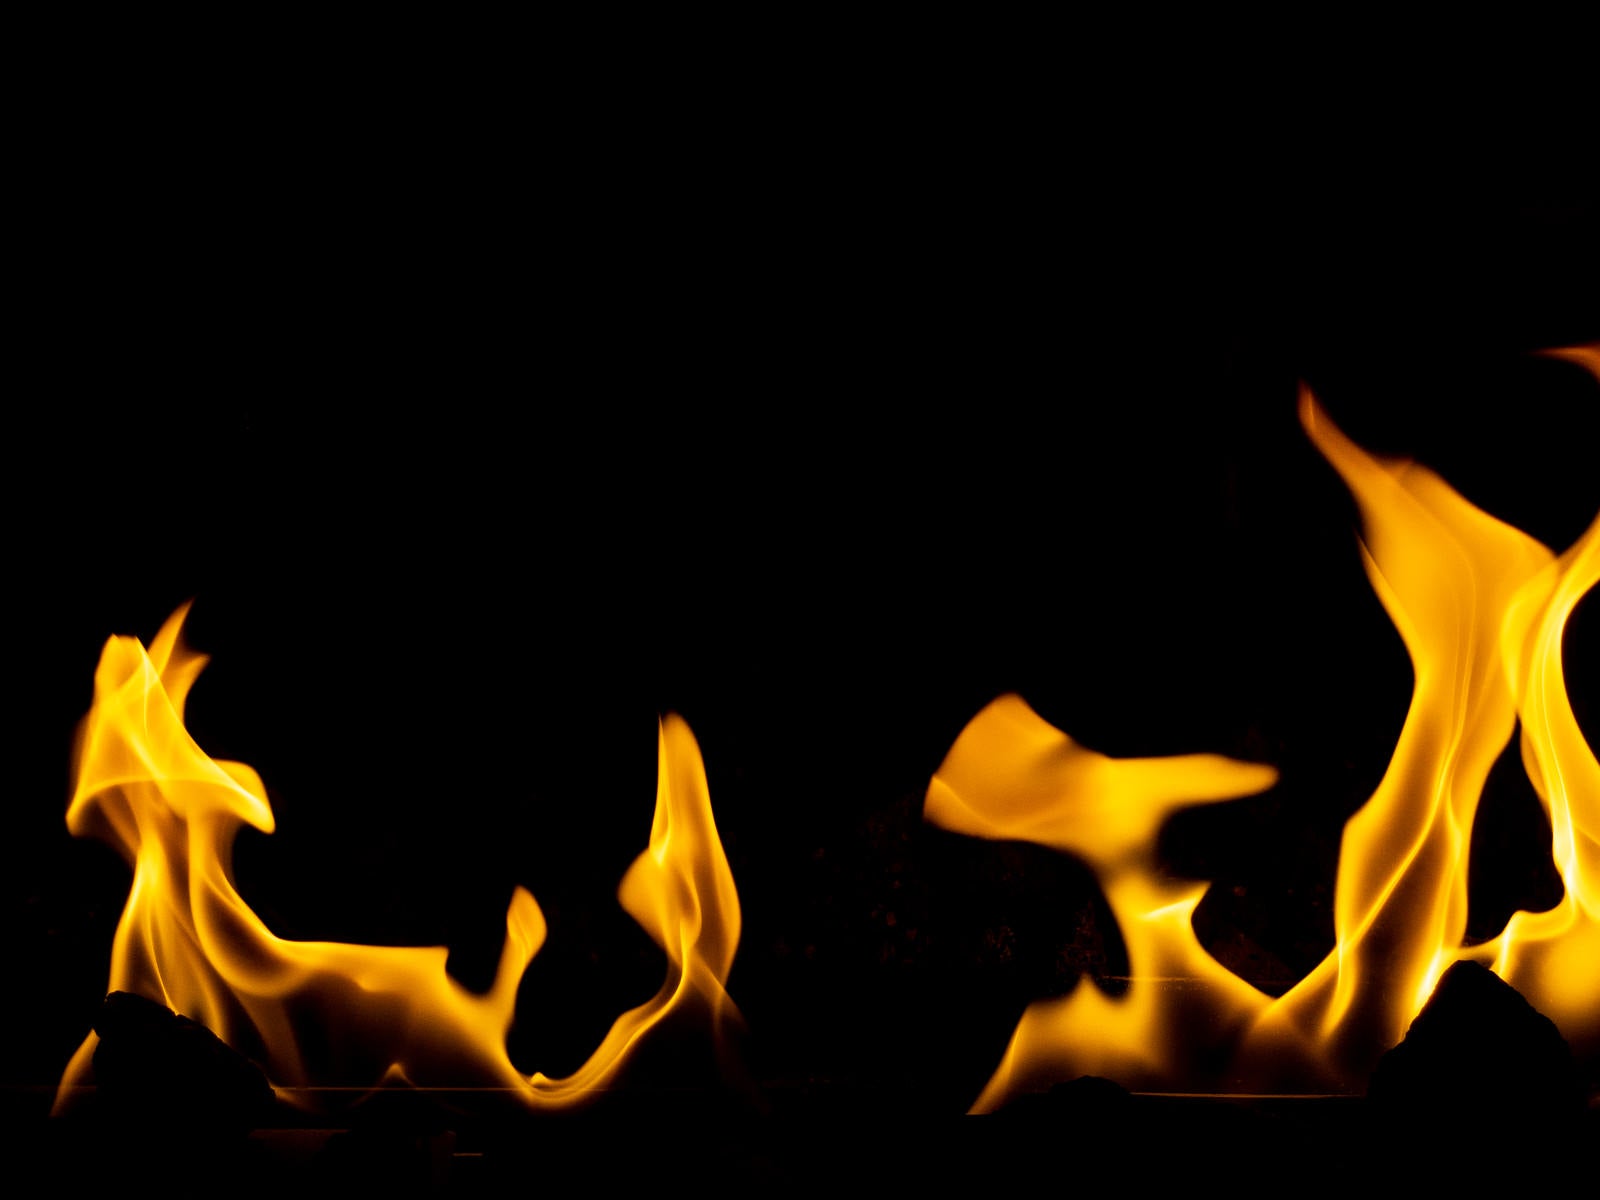 「火が燃えさかる」の写真